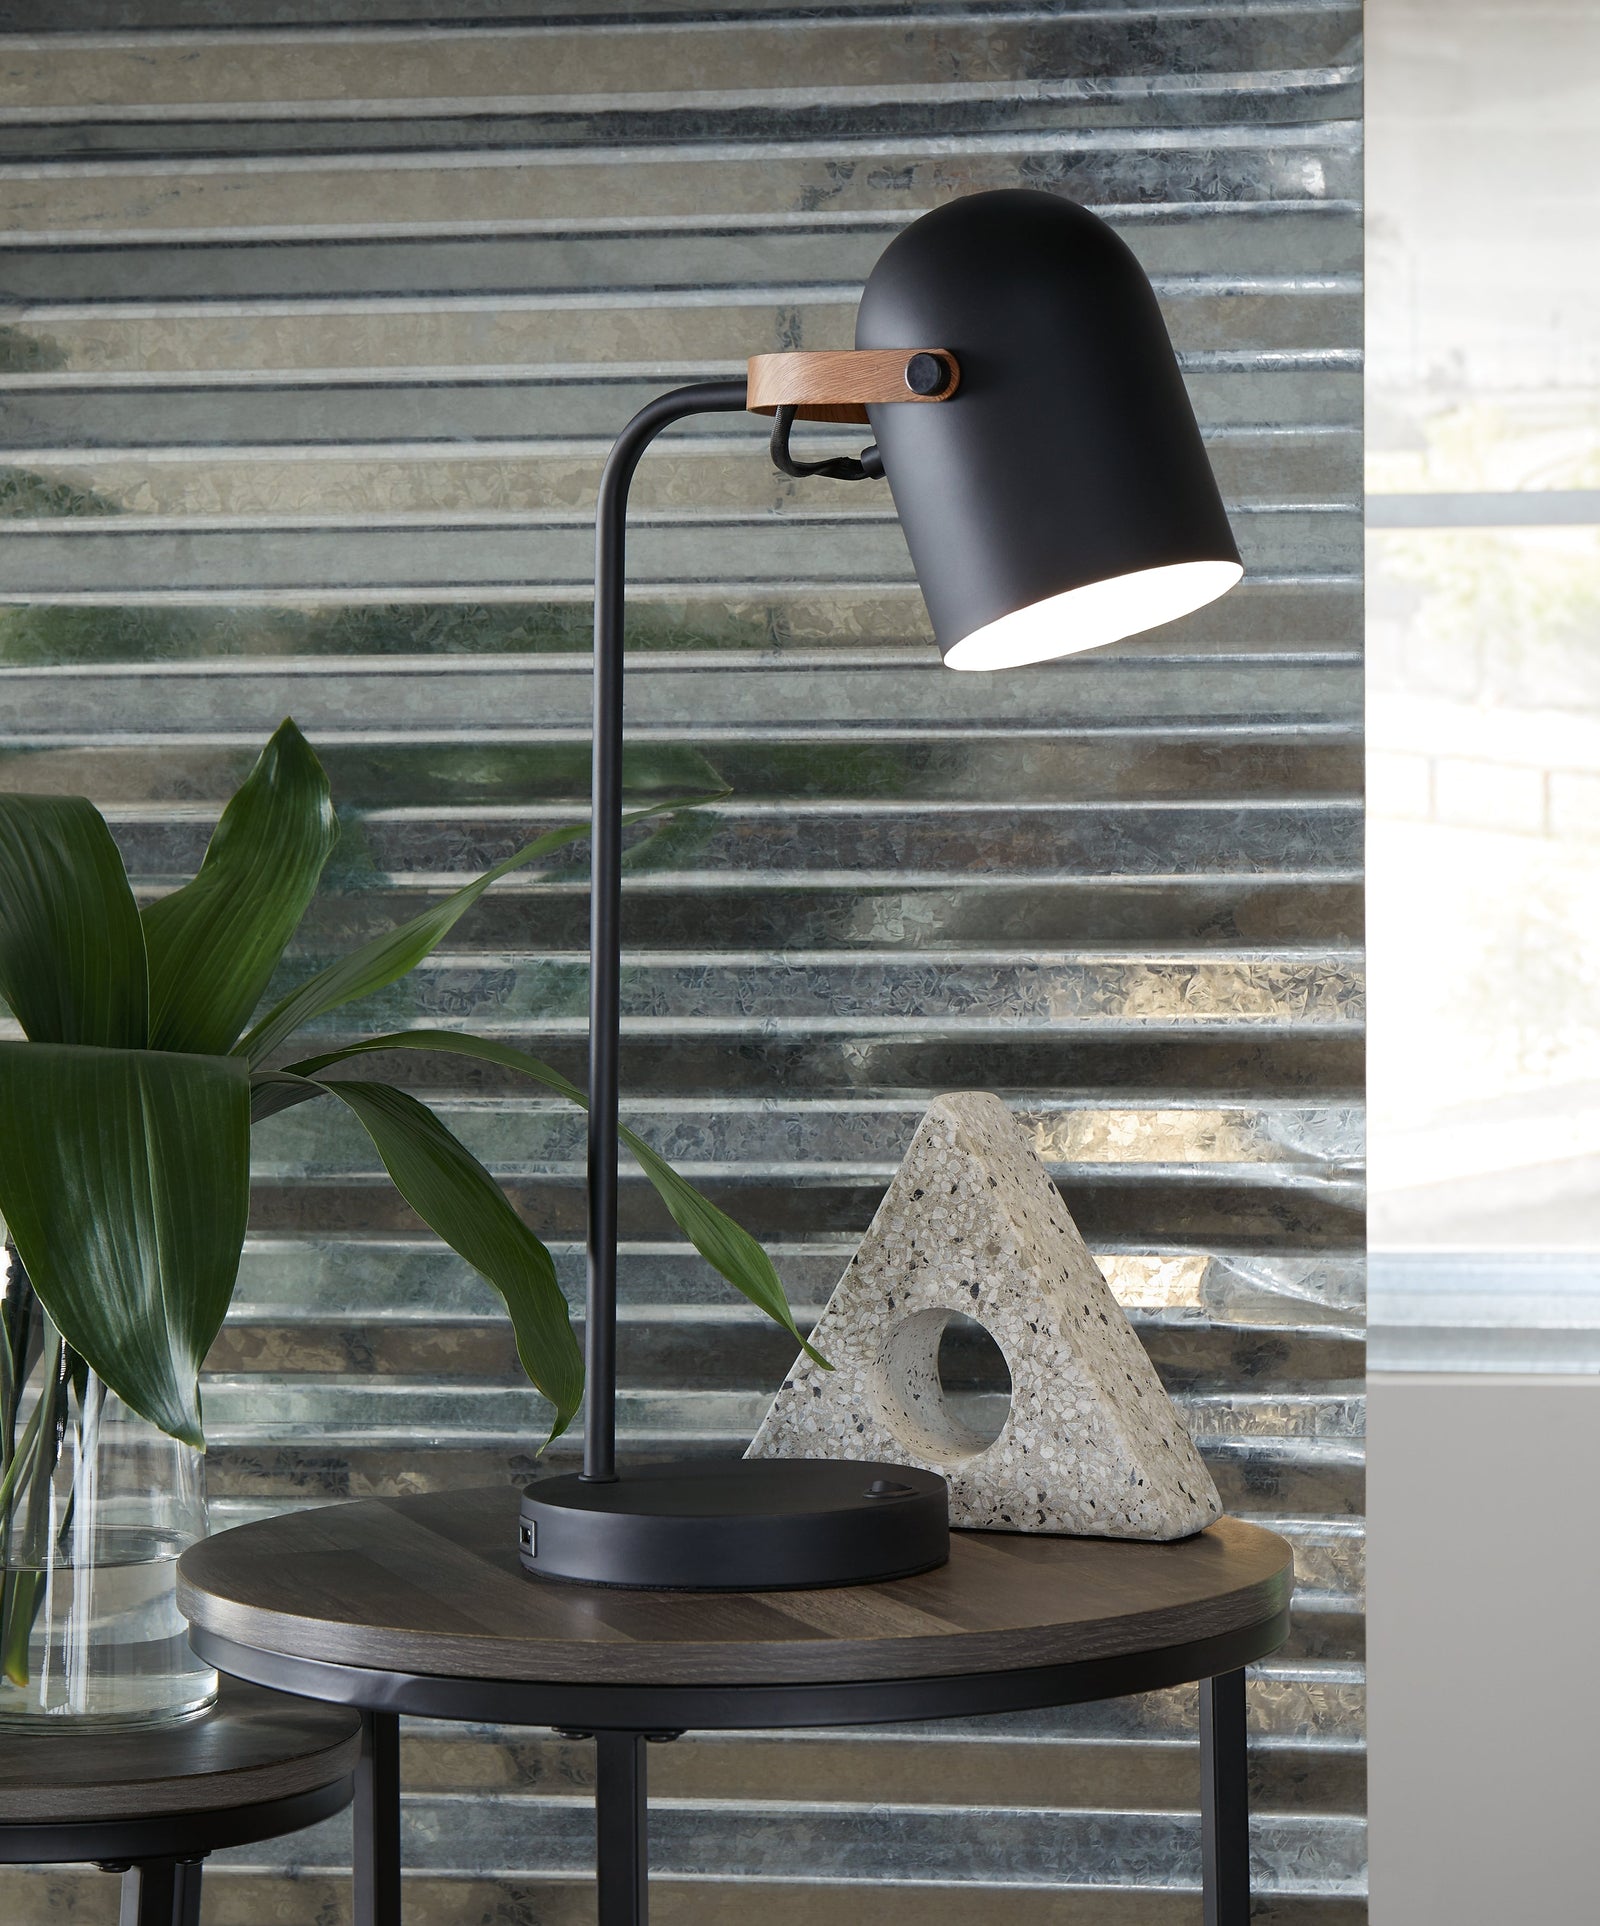 Ridgewick Black/brown Desk Lamp